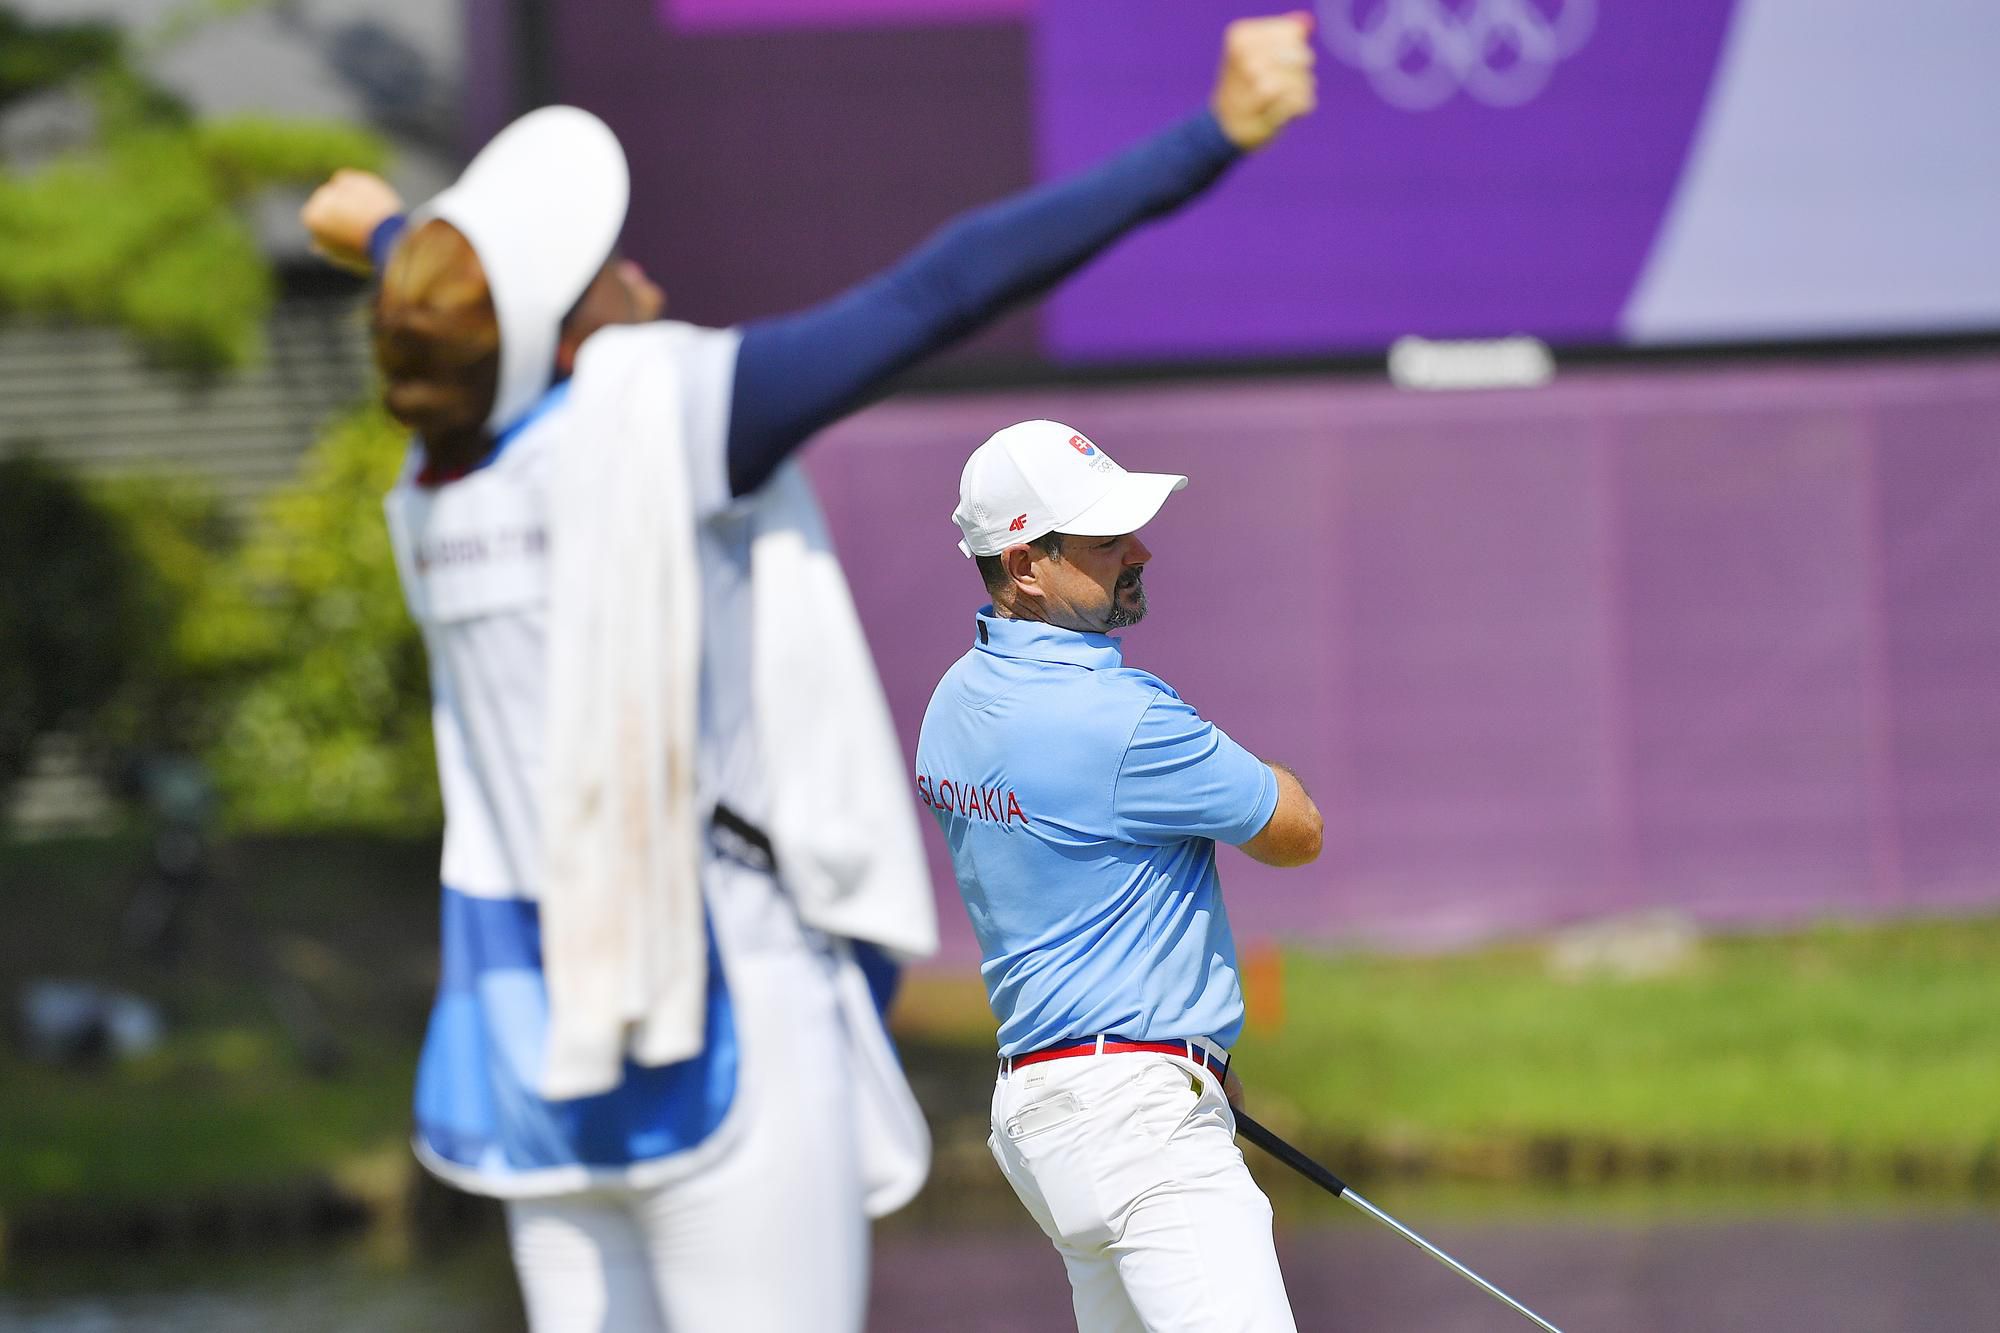 Rory Sabbatini v záverečnom kole golfového turnaja OH Tokio 2020